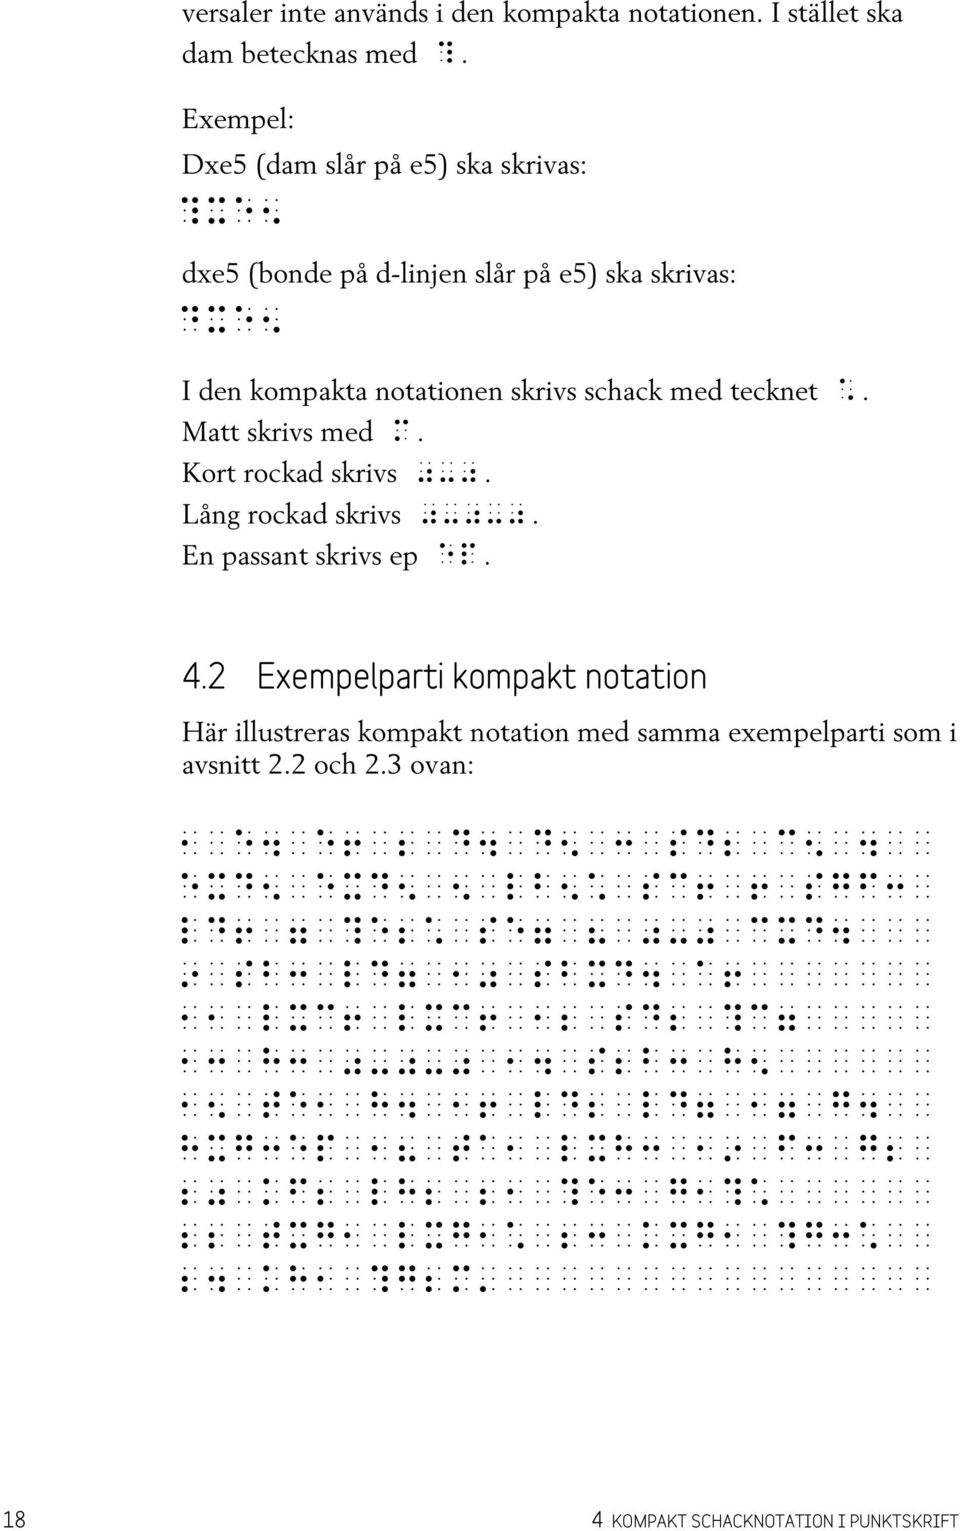 2 Exempelparti kompakt notation Här illustreras kompakt notation med samma exempelparti som i avsnitt 2.2 och 2.3 ovan:,<e$<e!<;<d$<d?<:<sd;<c?<$<< exd?<exd?<?<lb?å<sc!<!<sgf:< ld!